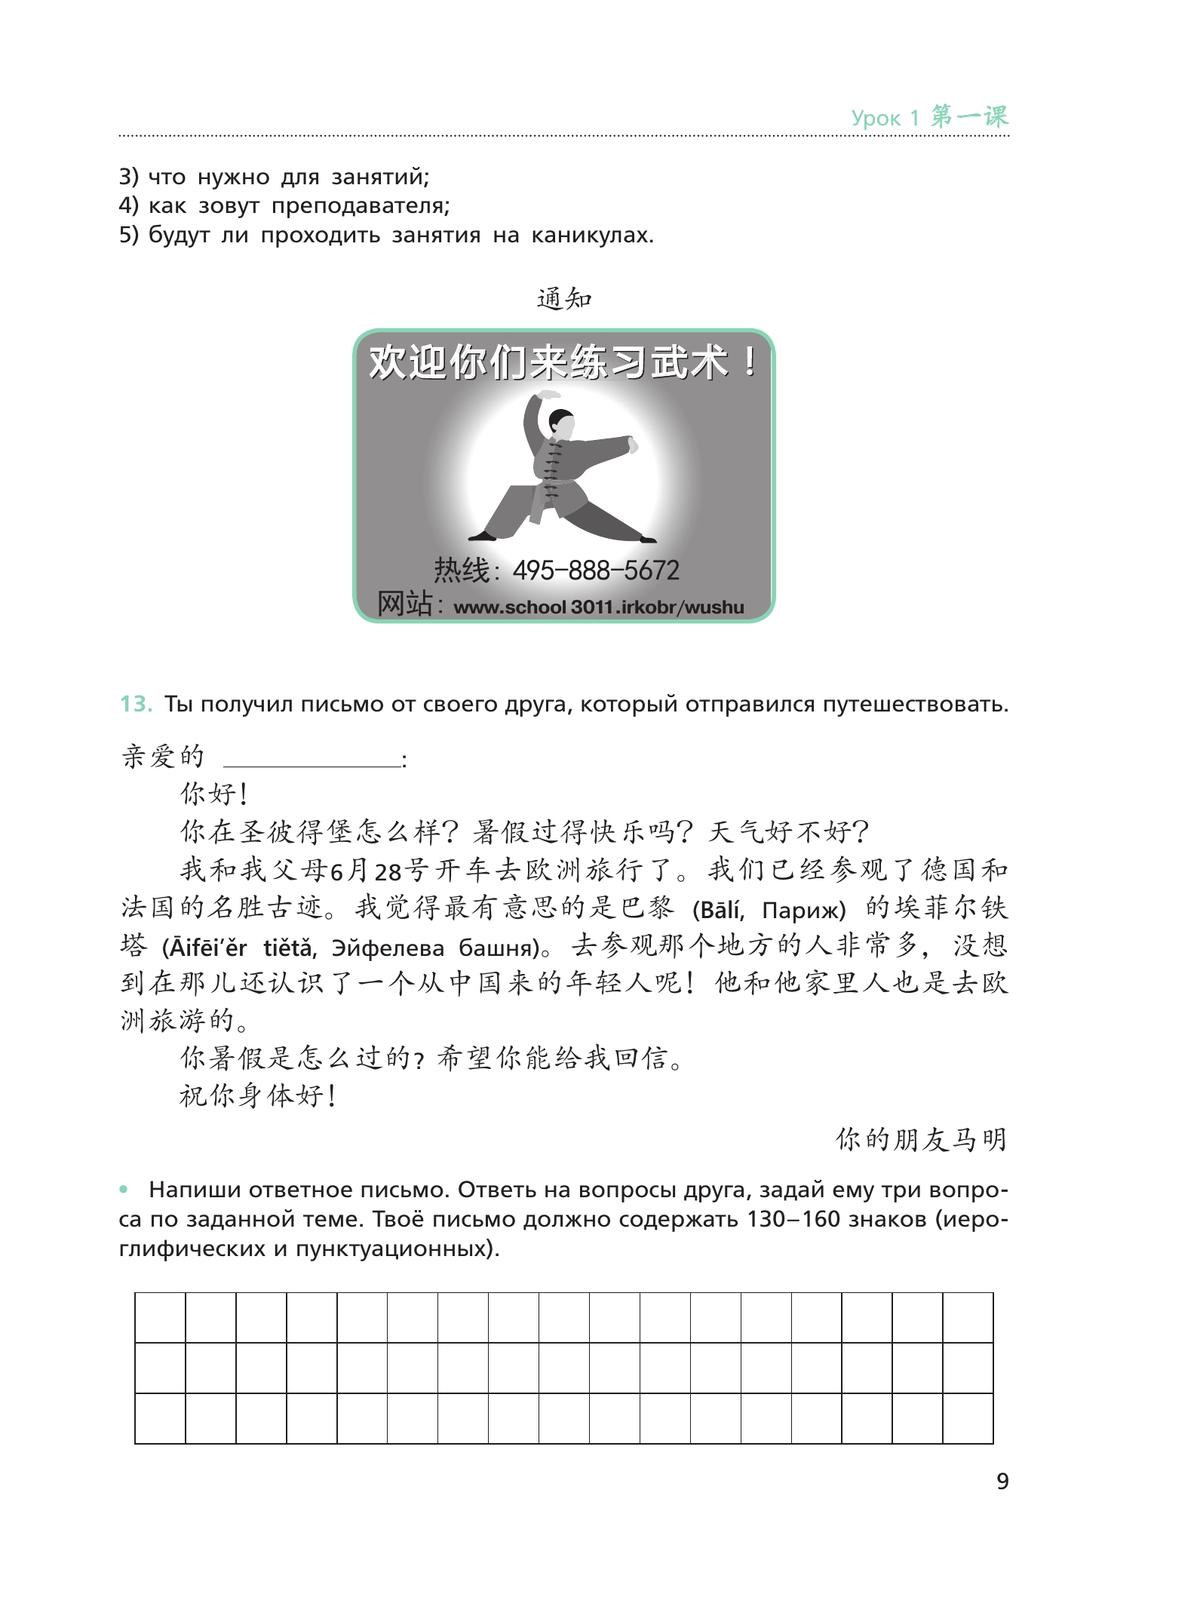 Китайский язык. Рабочая тетрадь. 9 класс 7